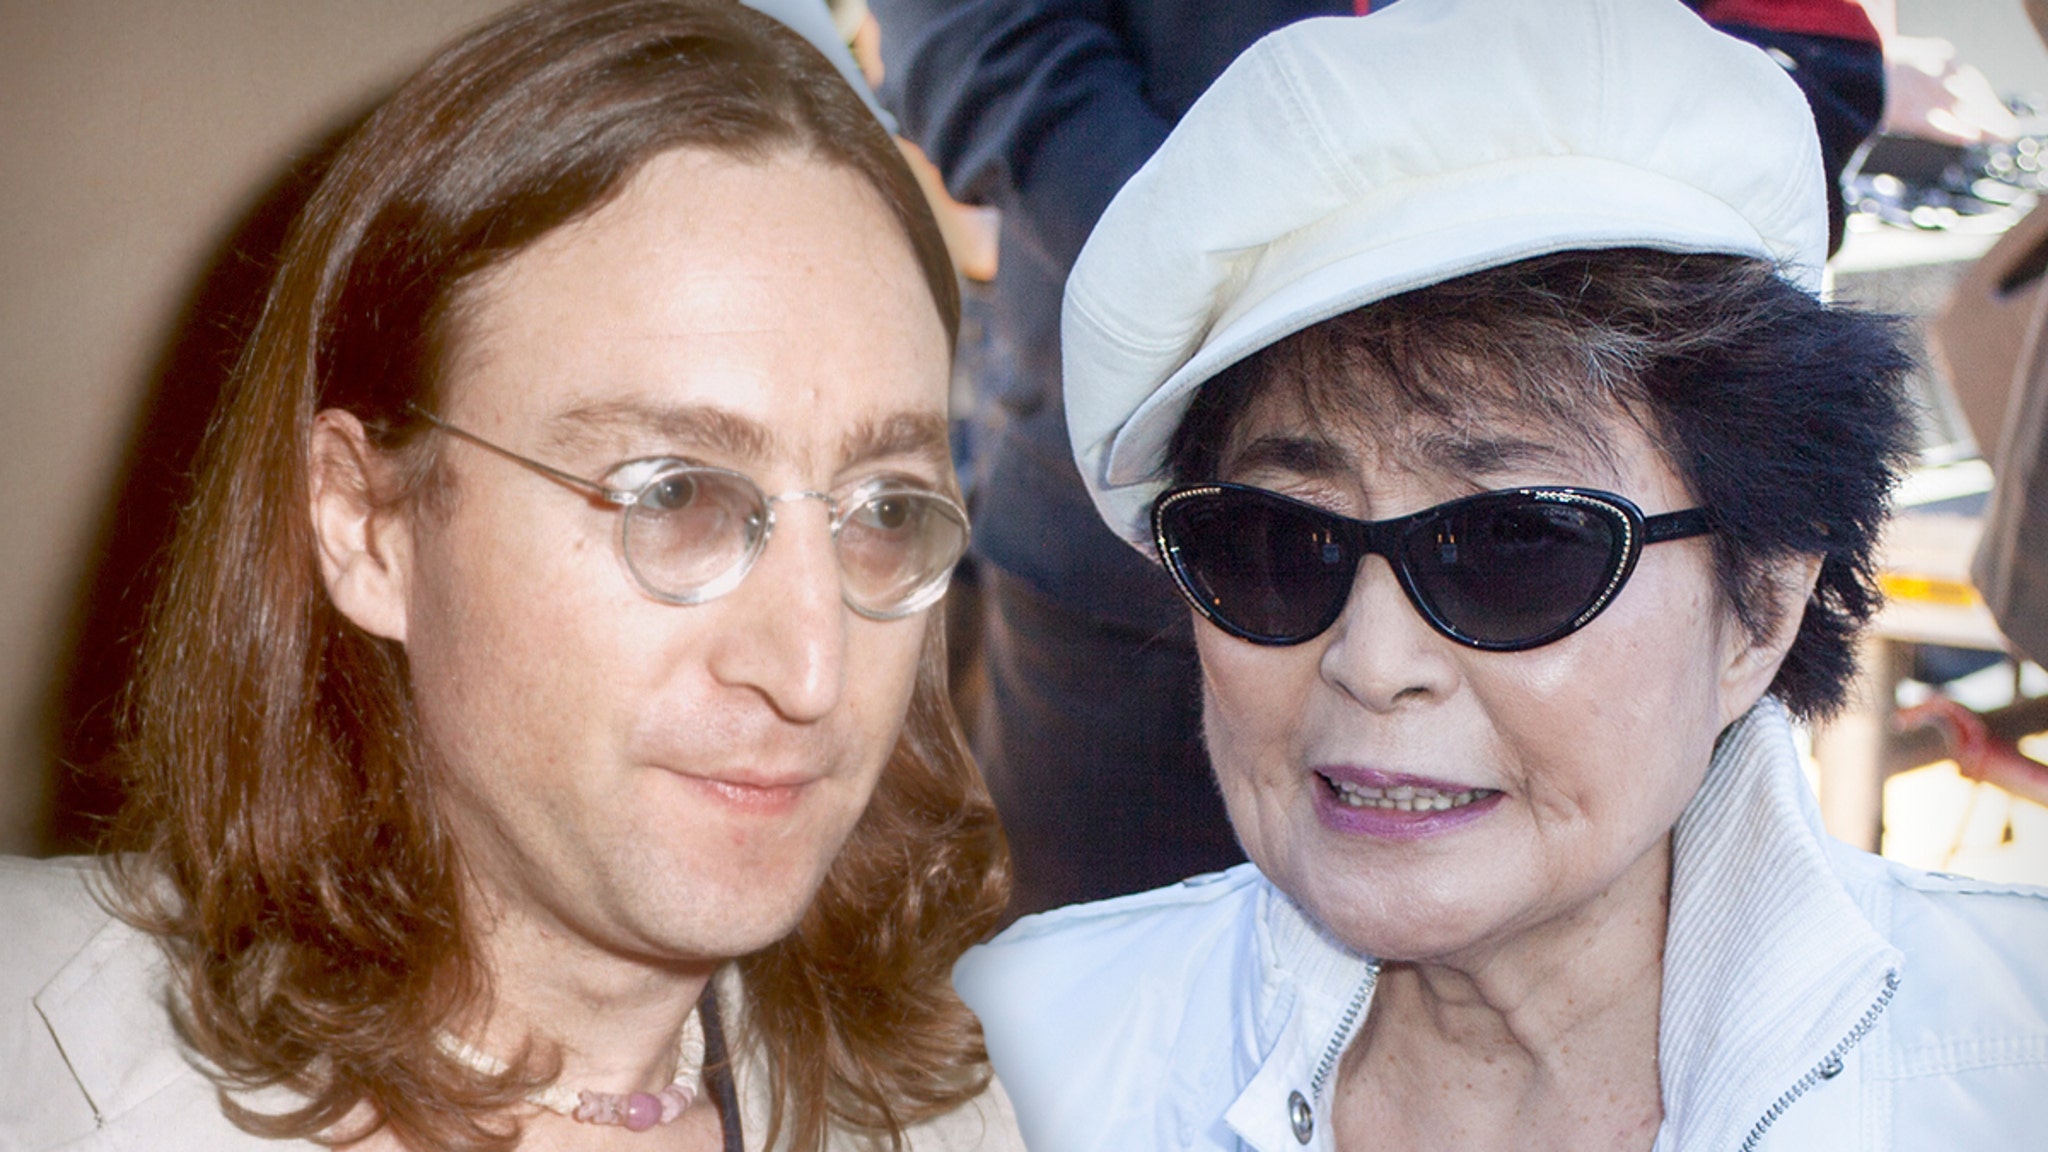 Si presume che John Lennon abbia avuto una relazione con un'assistente adolescente che è stata creata da Yoko Ono